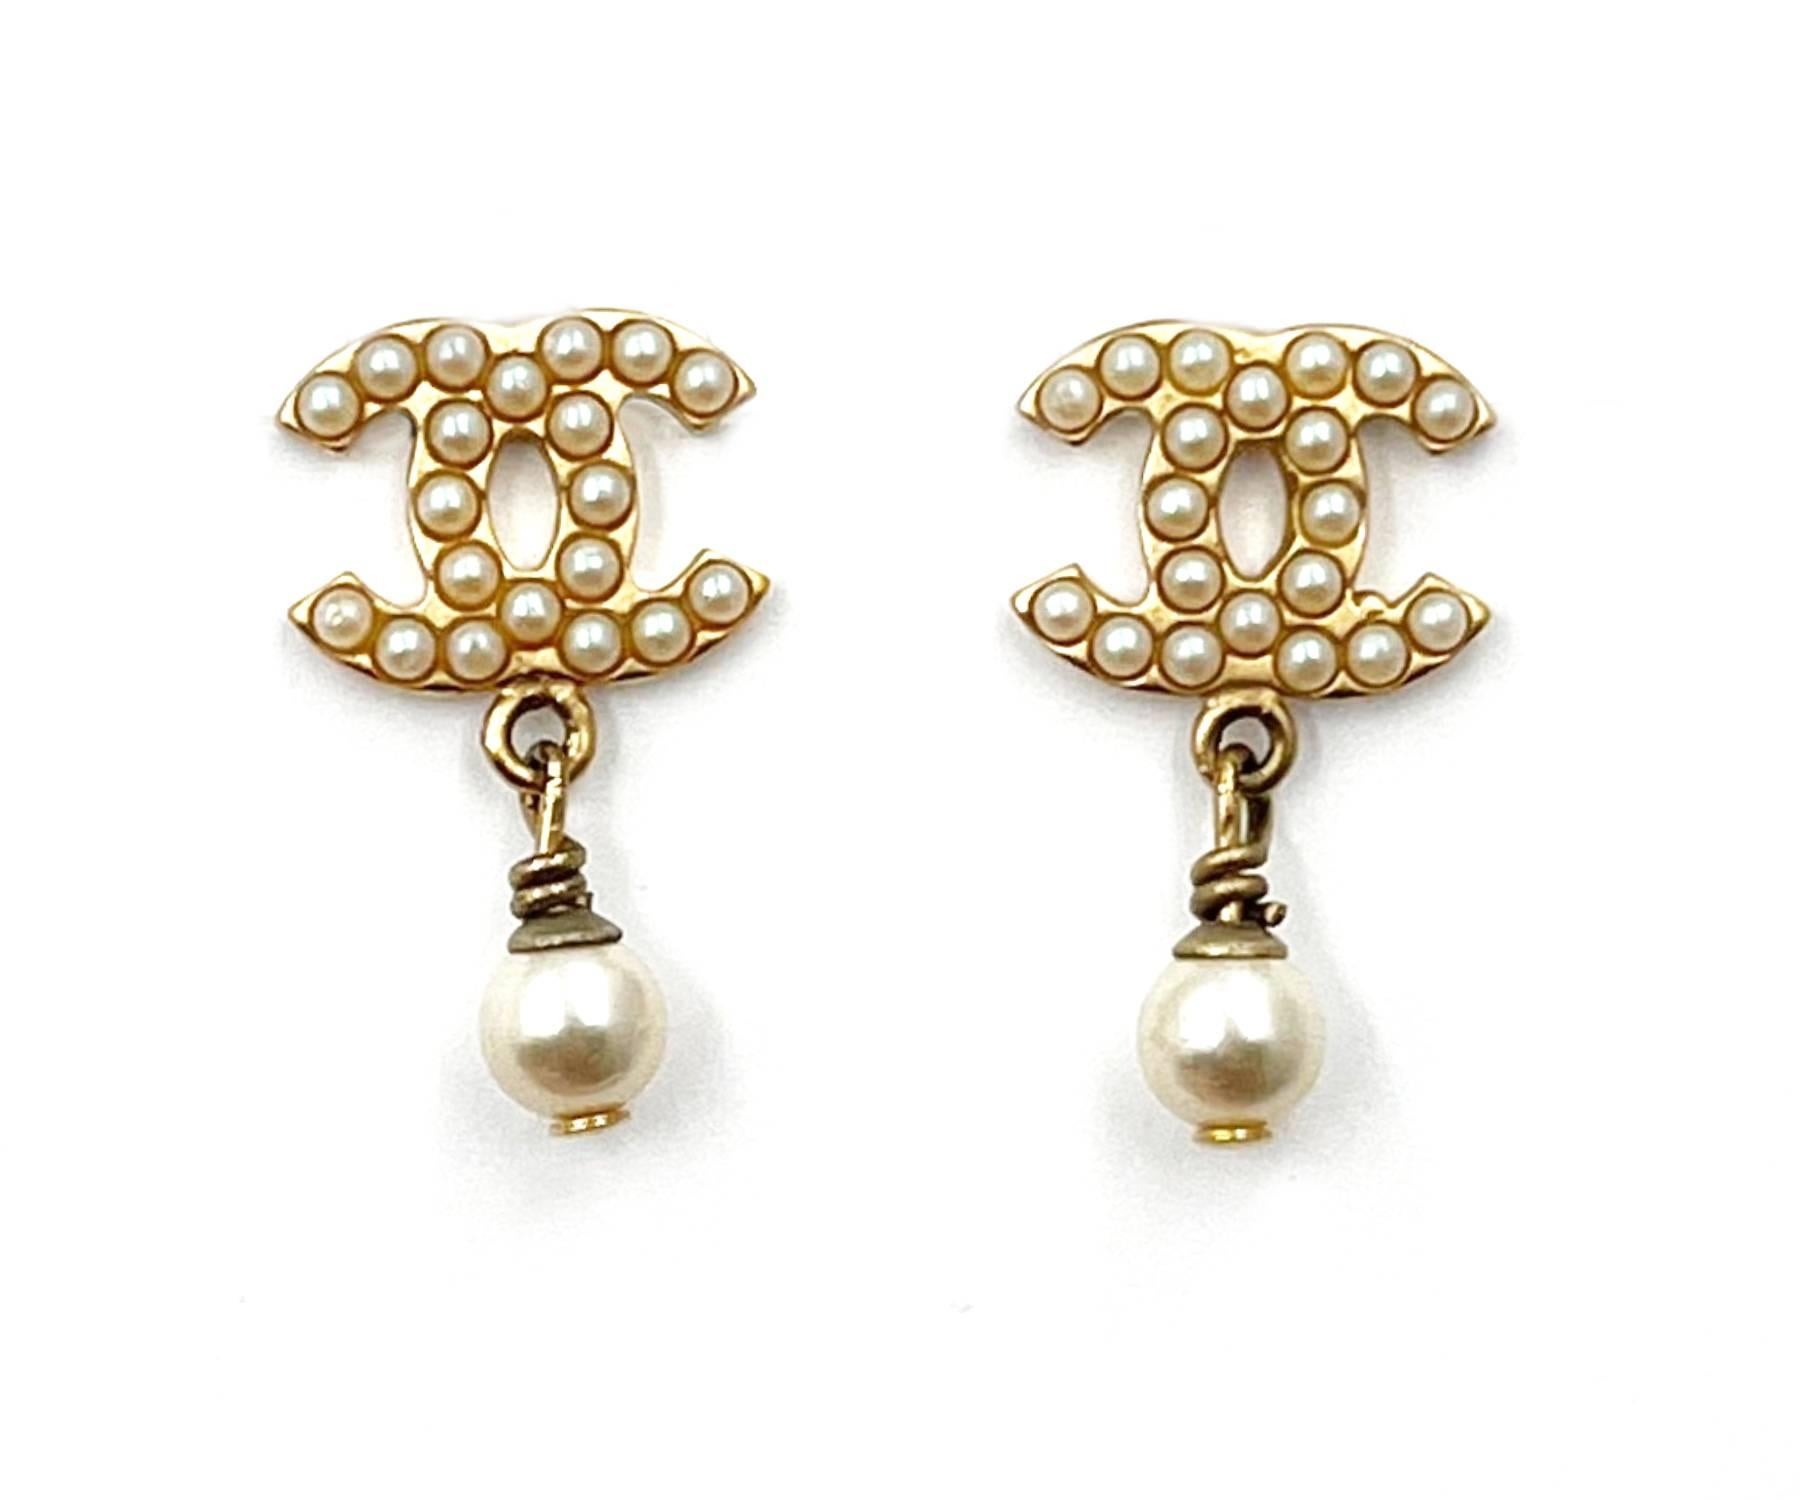 Chanel Vintage Vergoldete Mini-Perlen-Perlen-Ohrringe mit durchbohrten Perlen-Ohrringen   (Kunsthandwerker*in)